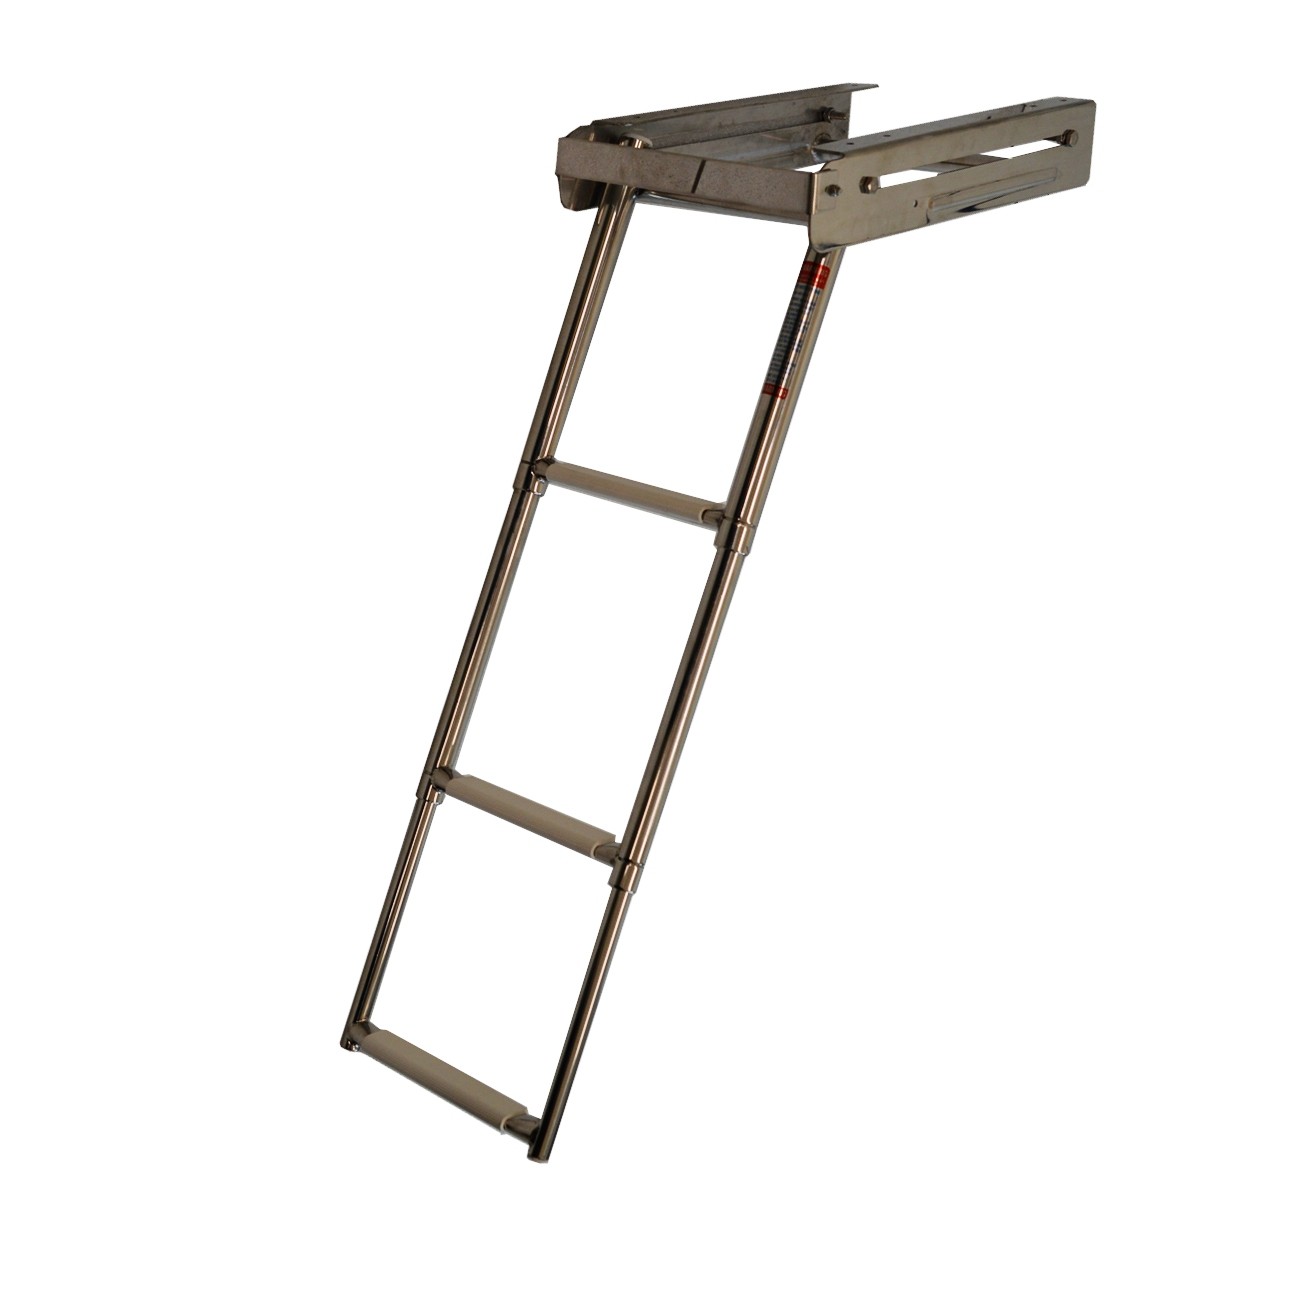 273.1 - Σκάλα Inox Πτυσσόμενη Πλατφόρμας Με 4 Σκαλοπάτια Μήκους 115,5 cm